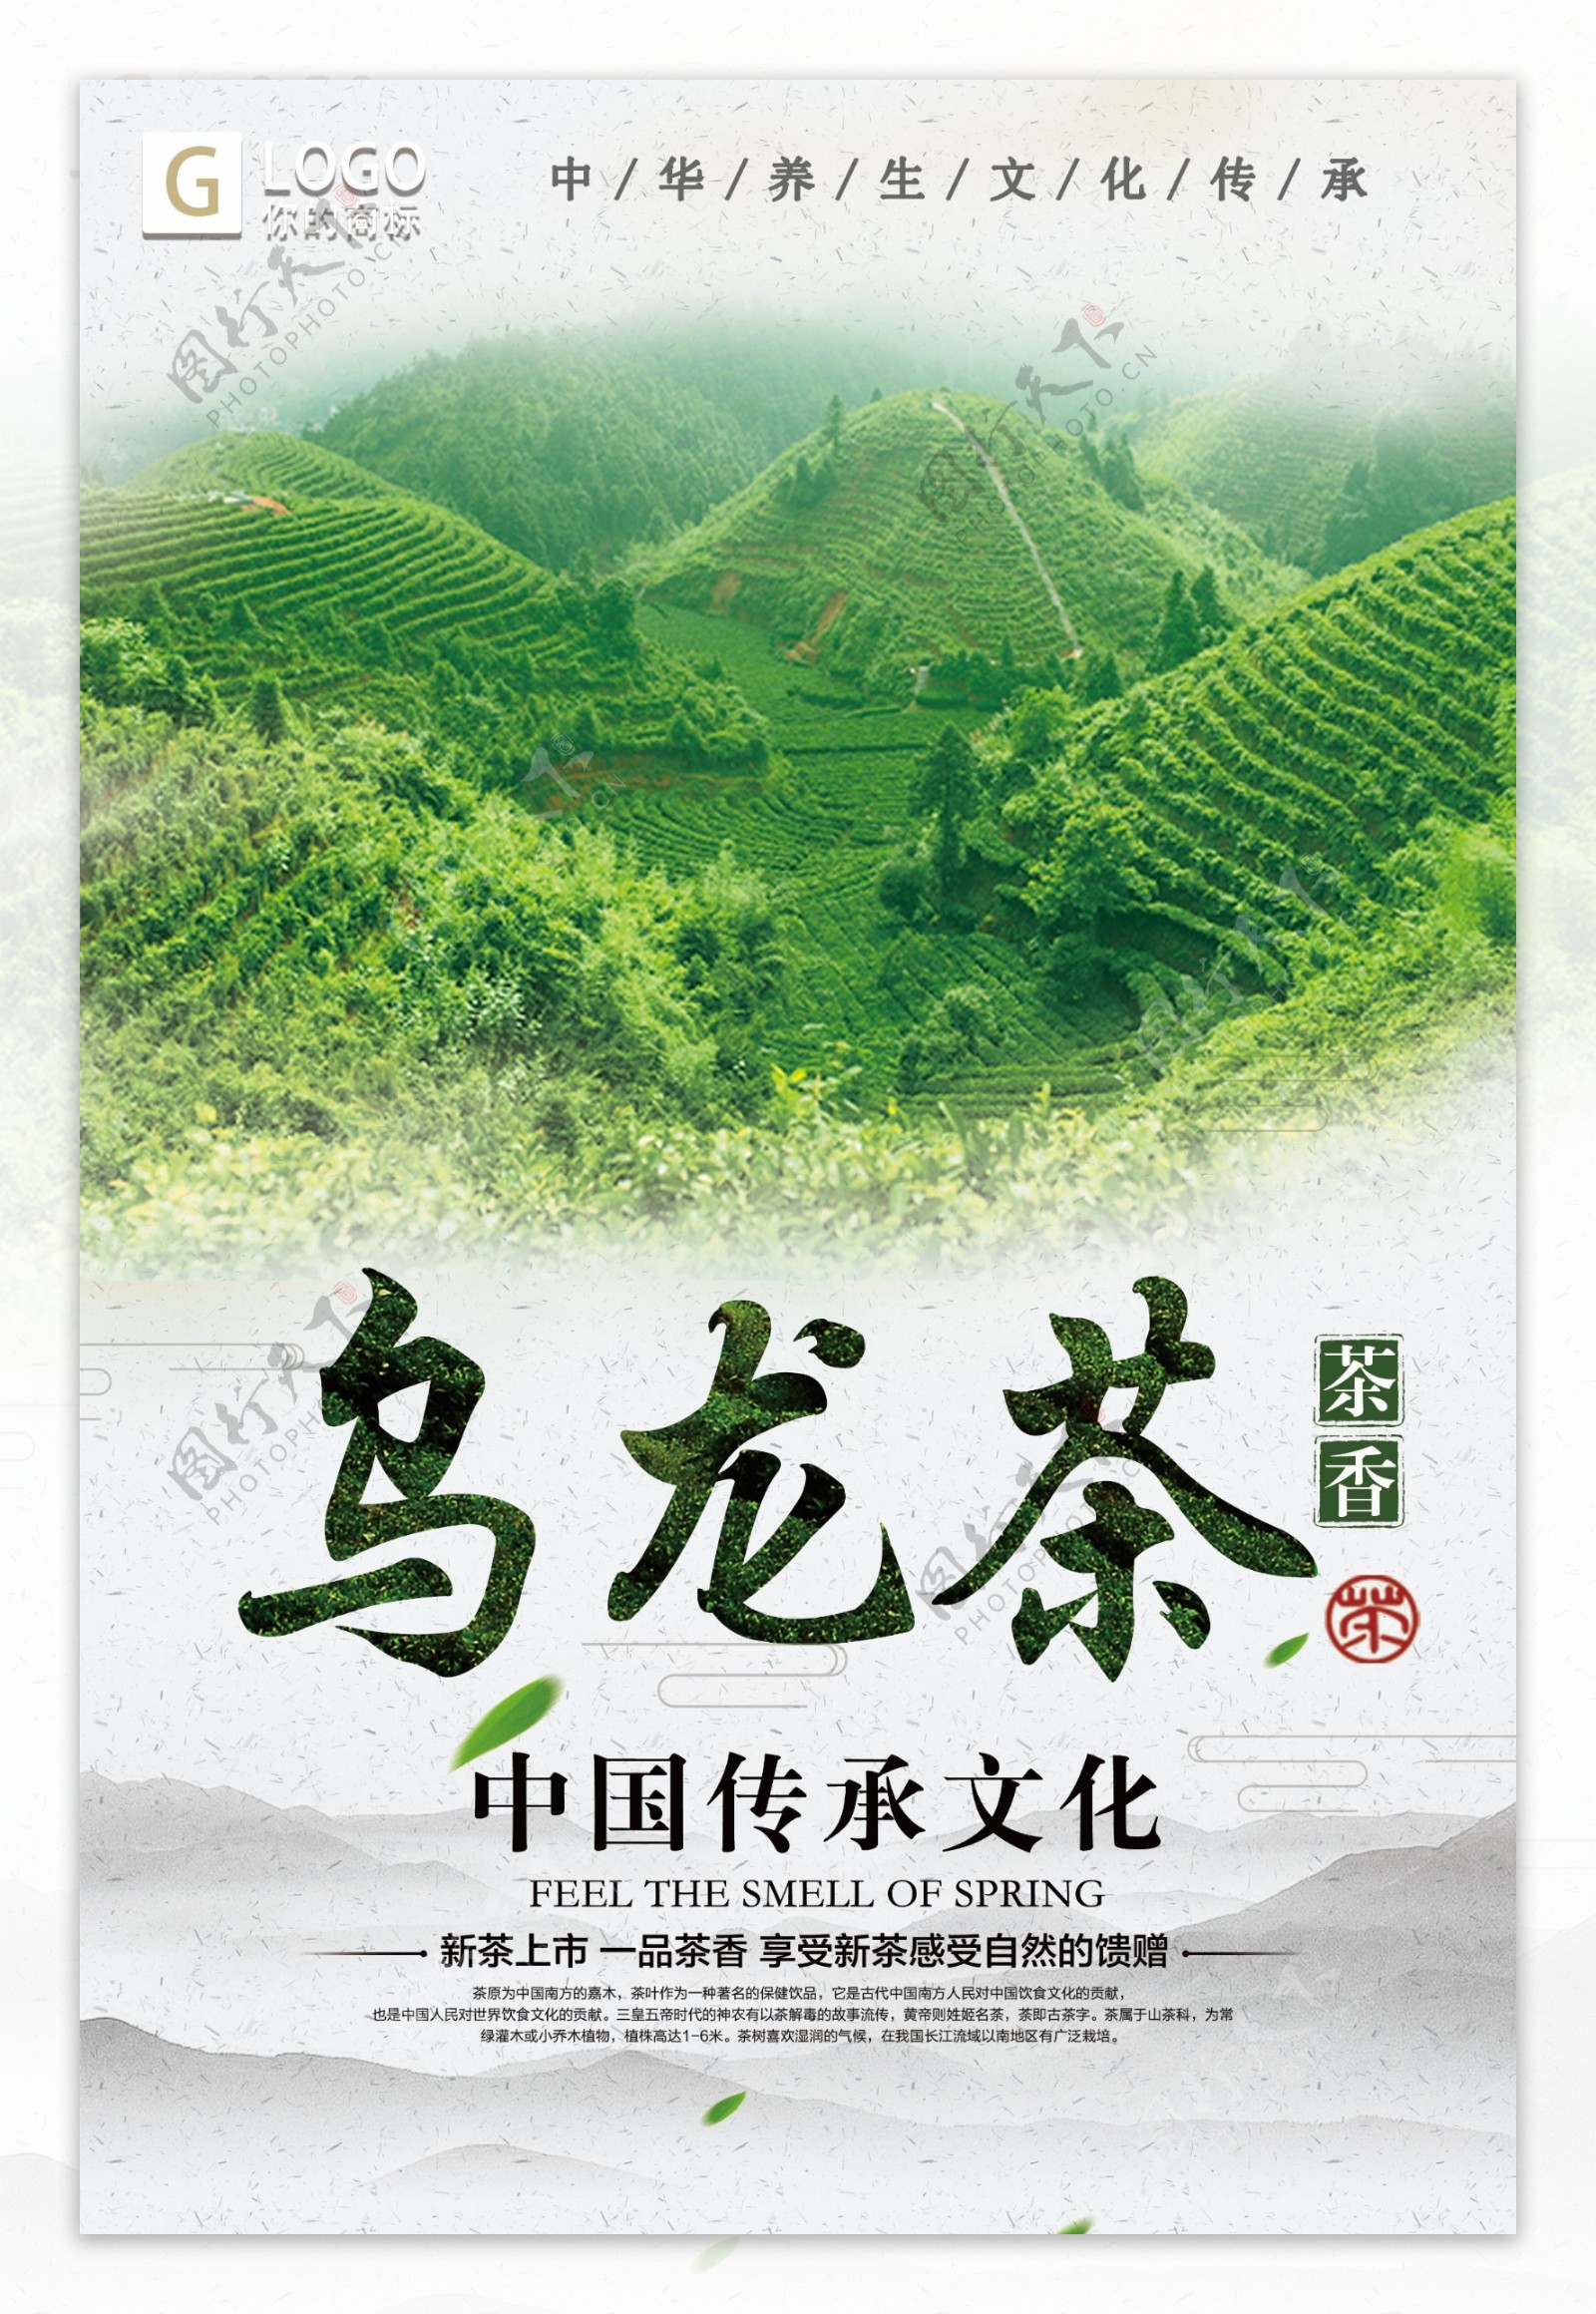 中国风时尚大气乌龙茶创意宣传海报设计